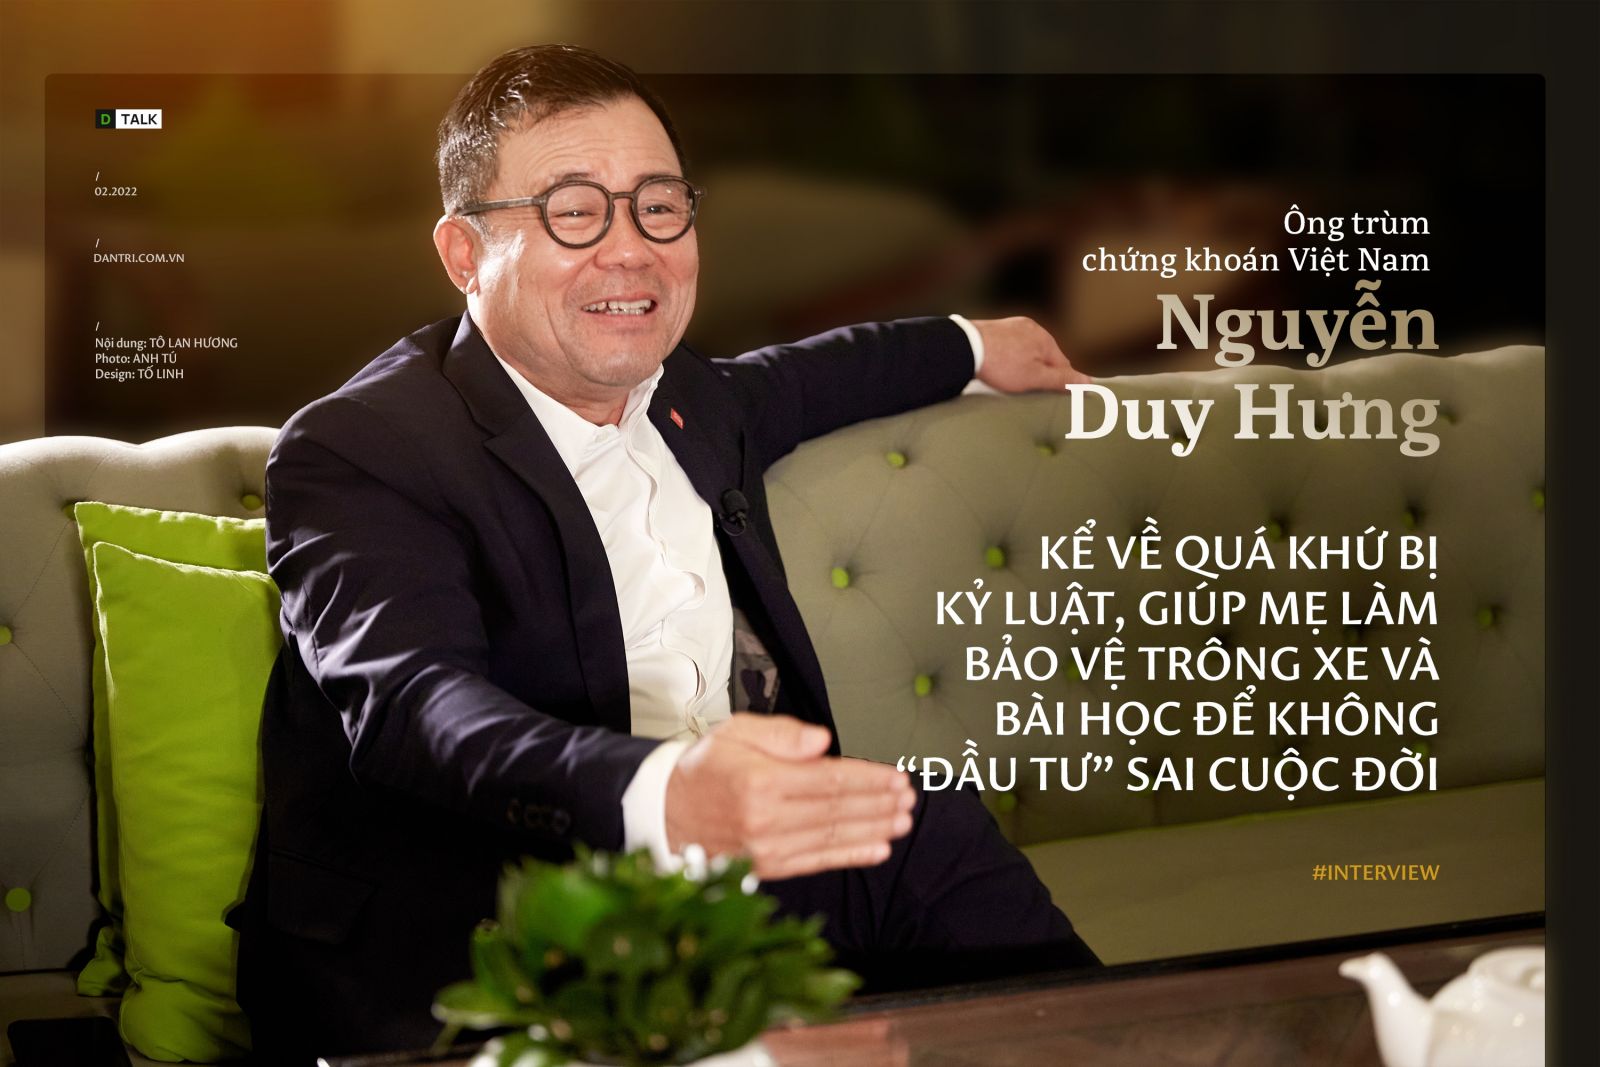 Tiểu sử ông trùm chứng khoán Nguyễn Duy Hưng